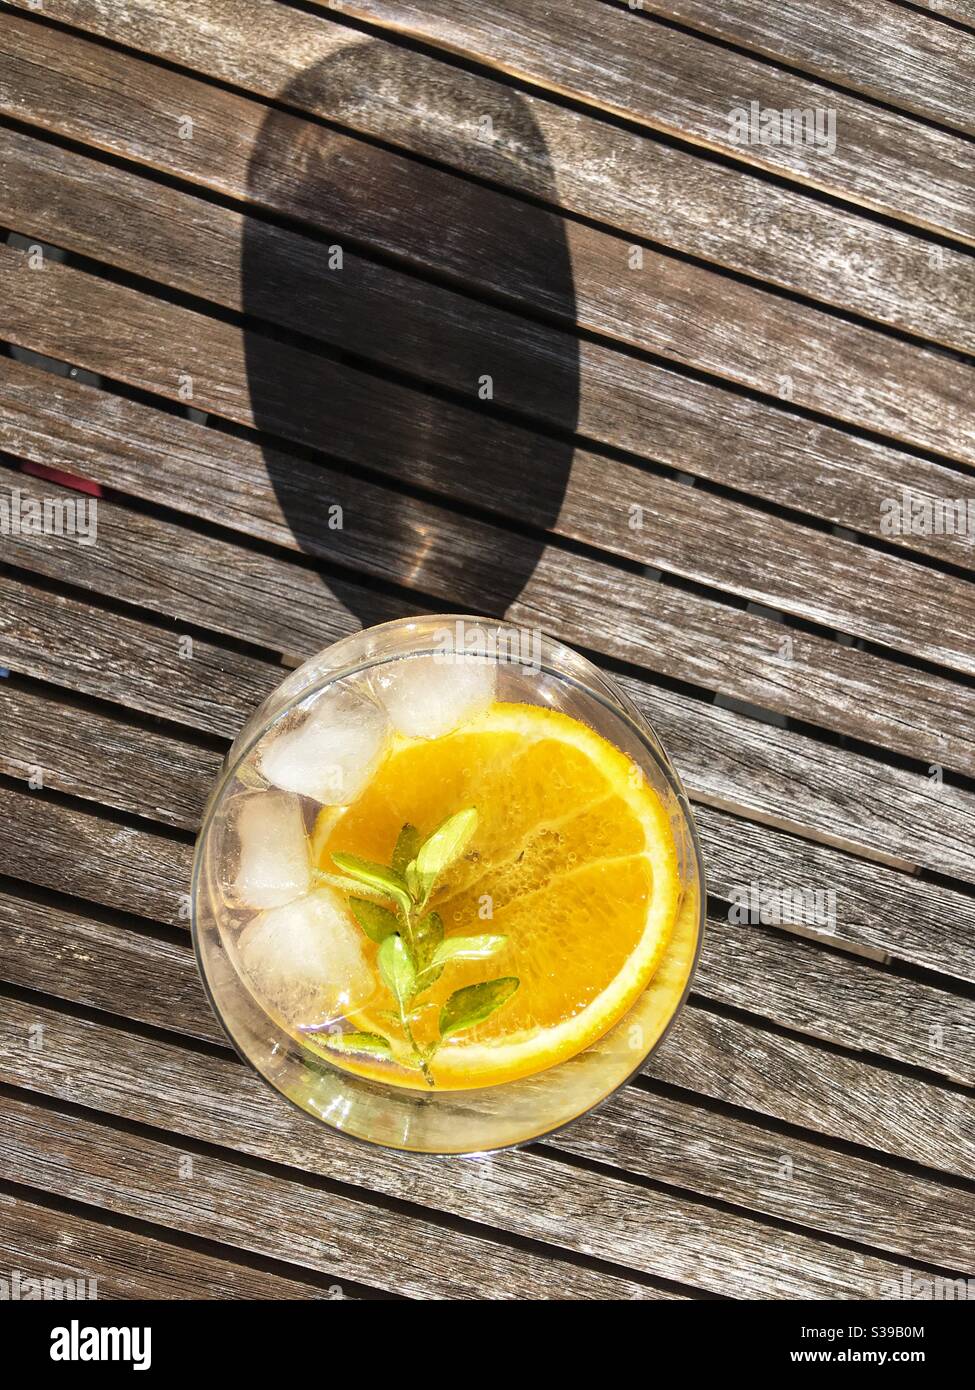 Gin & tonic beber con una rebanada de naranja y.. ramita de orégano Foto de stock